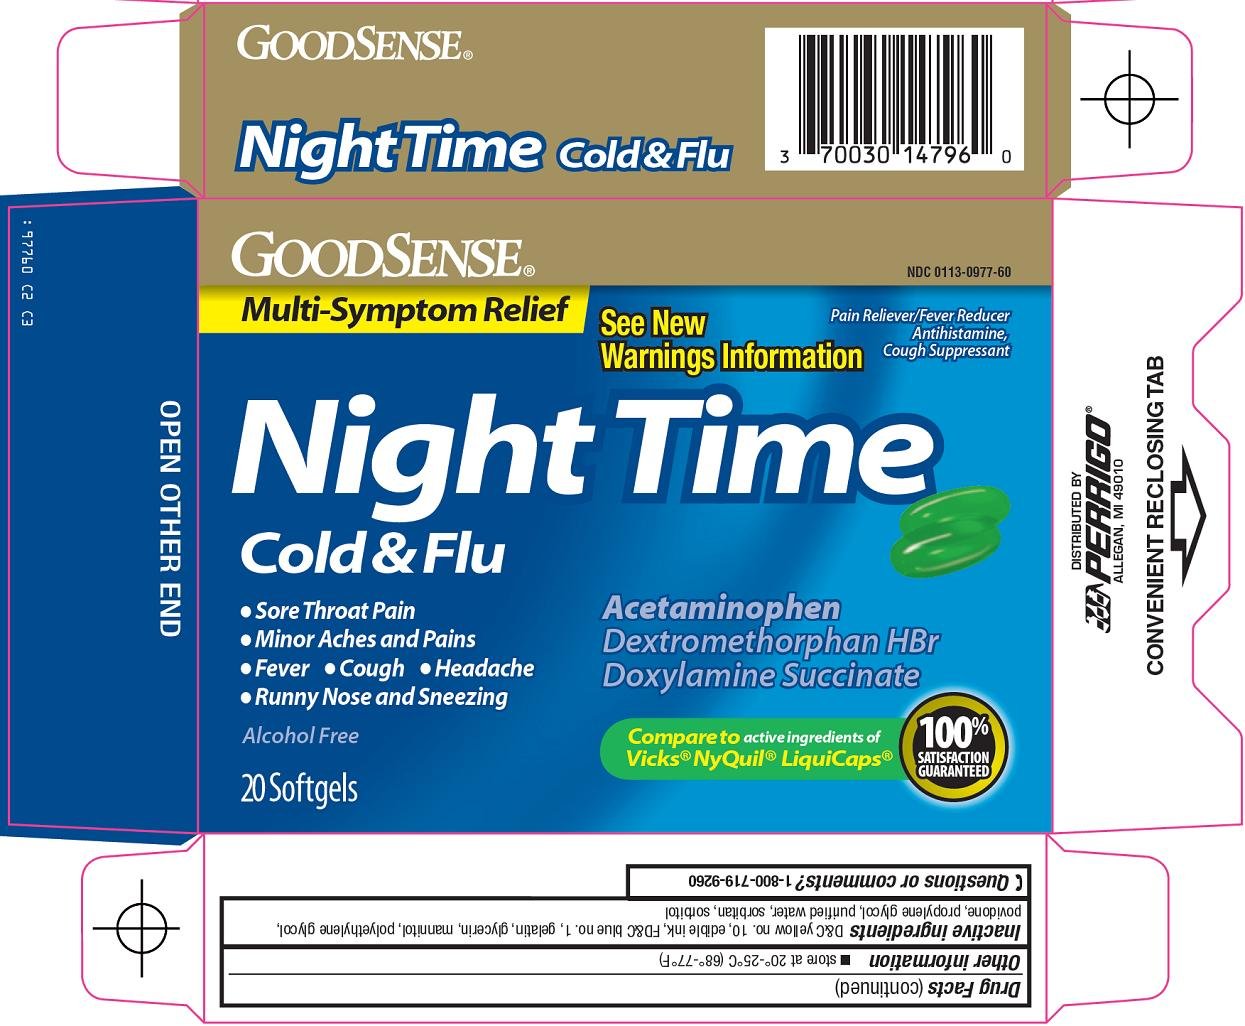 Night Time Carton Image 1